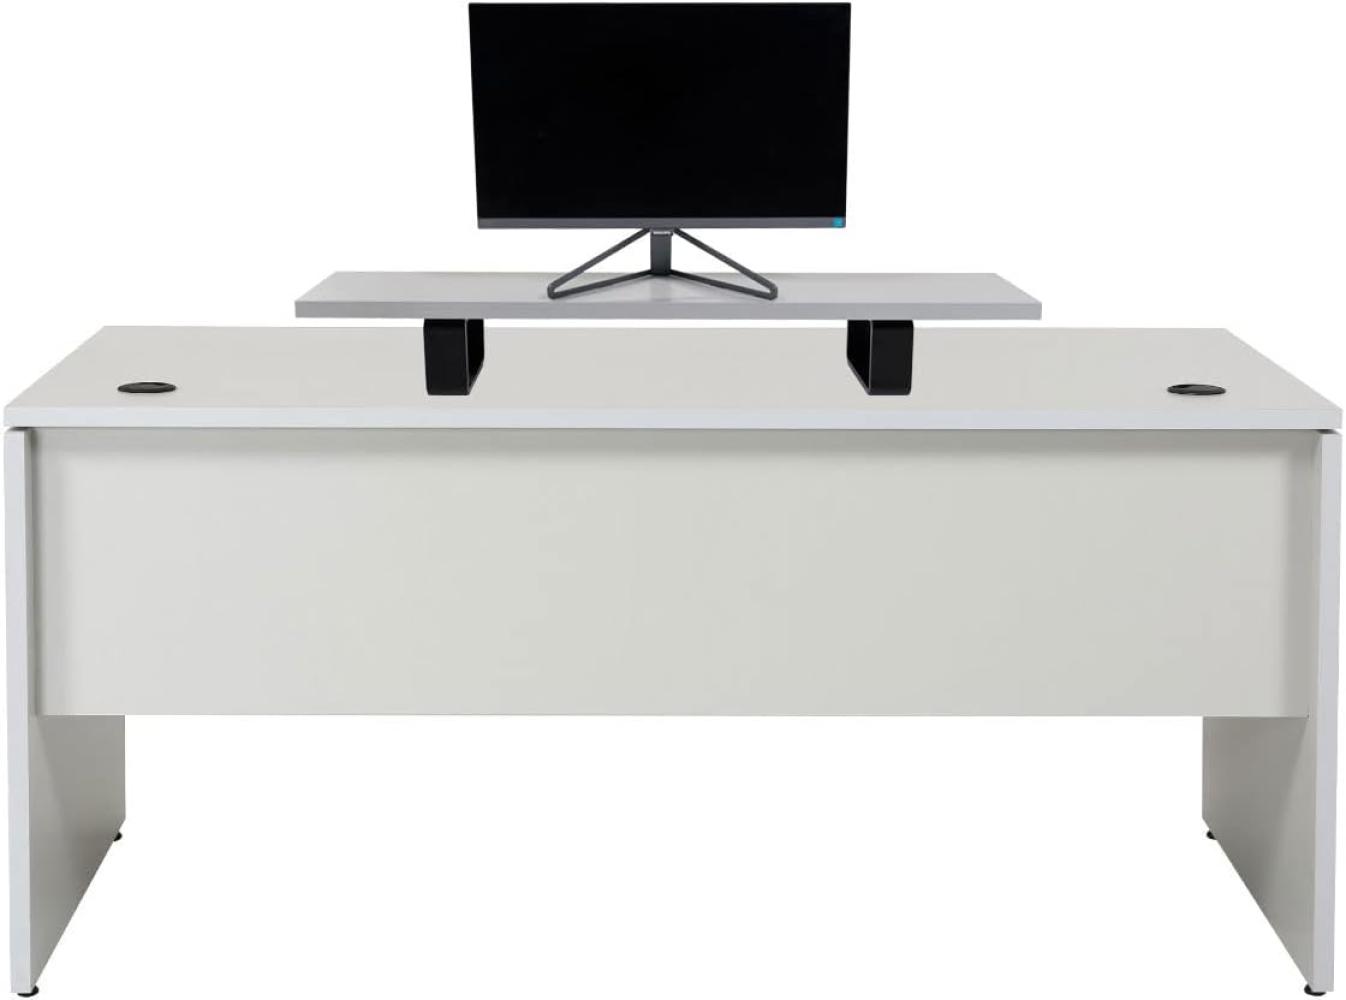 Furni24 Schreibtisch fürs Arbeitszimmer und Home Office - Großer laminierter Computertisch aus Holz, 2 Kabeldurchlässe (Grau, inkl. Monitorständer und Kabelkanal,180x80x75 cm) Bild 1